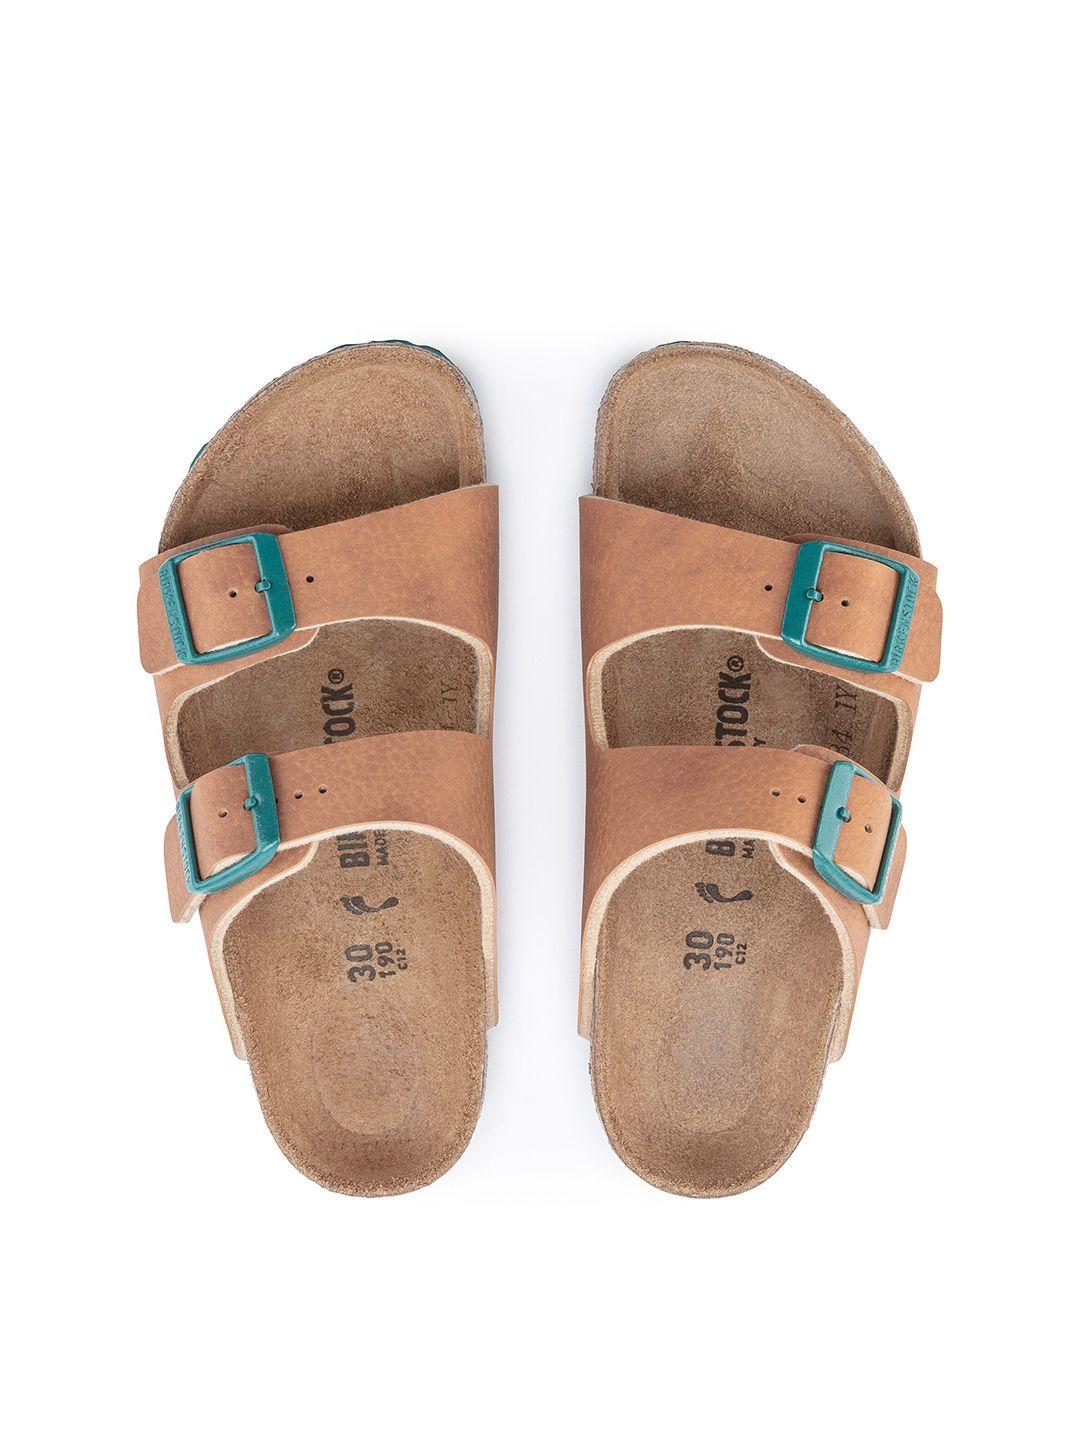 birkenstock boys brown arizona narrow width sandals